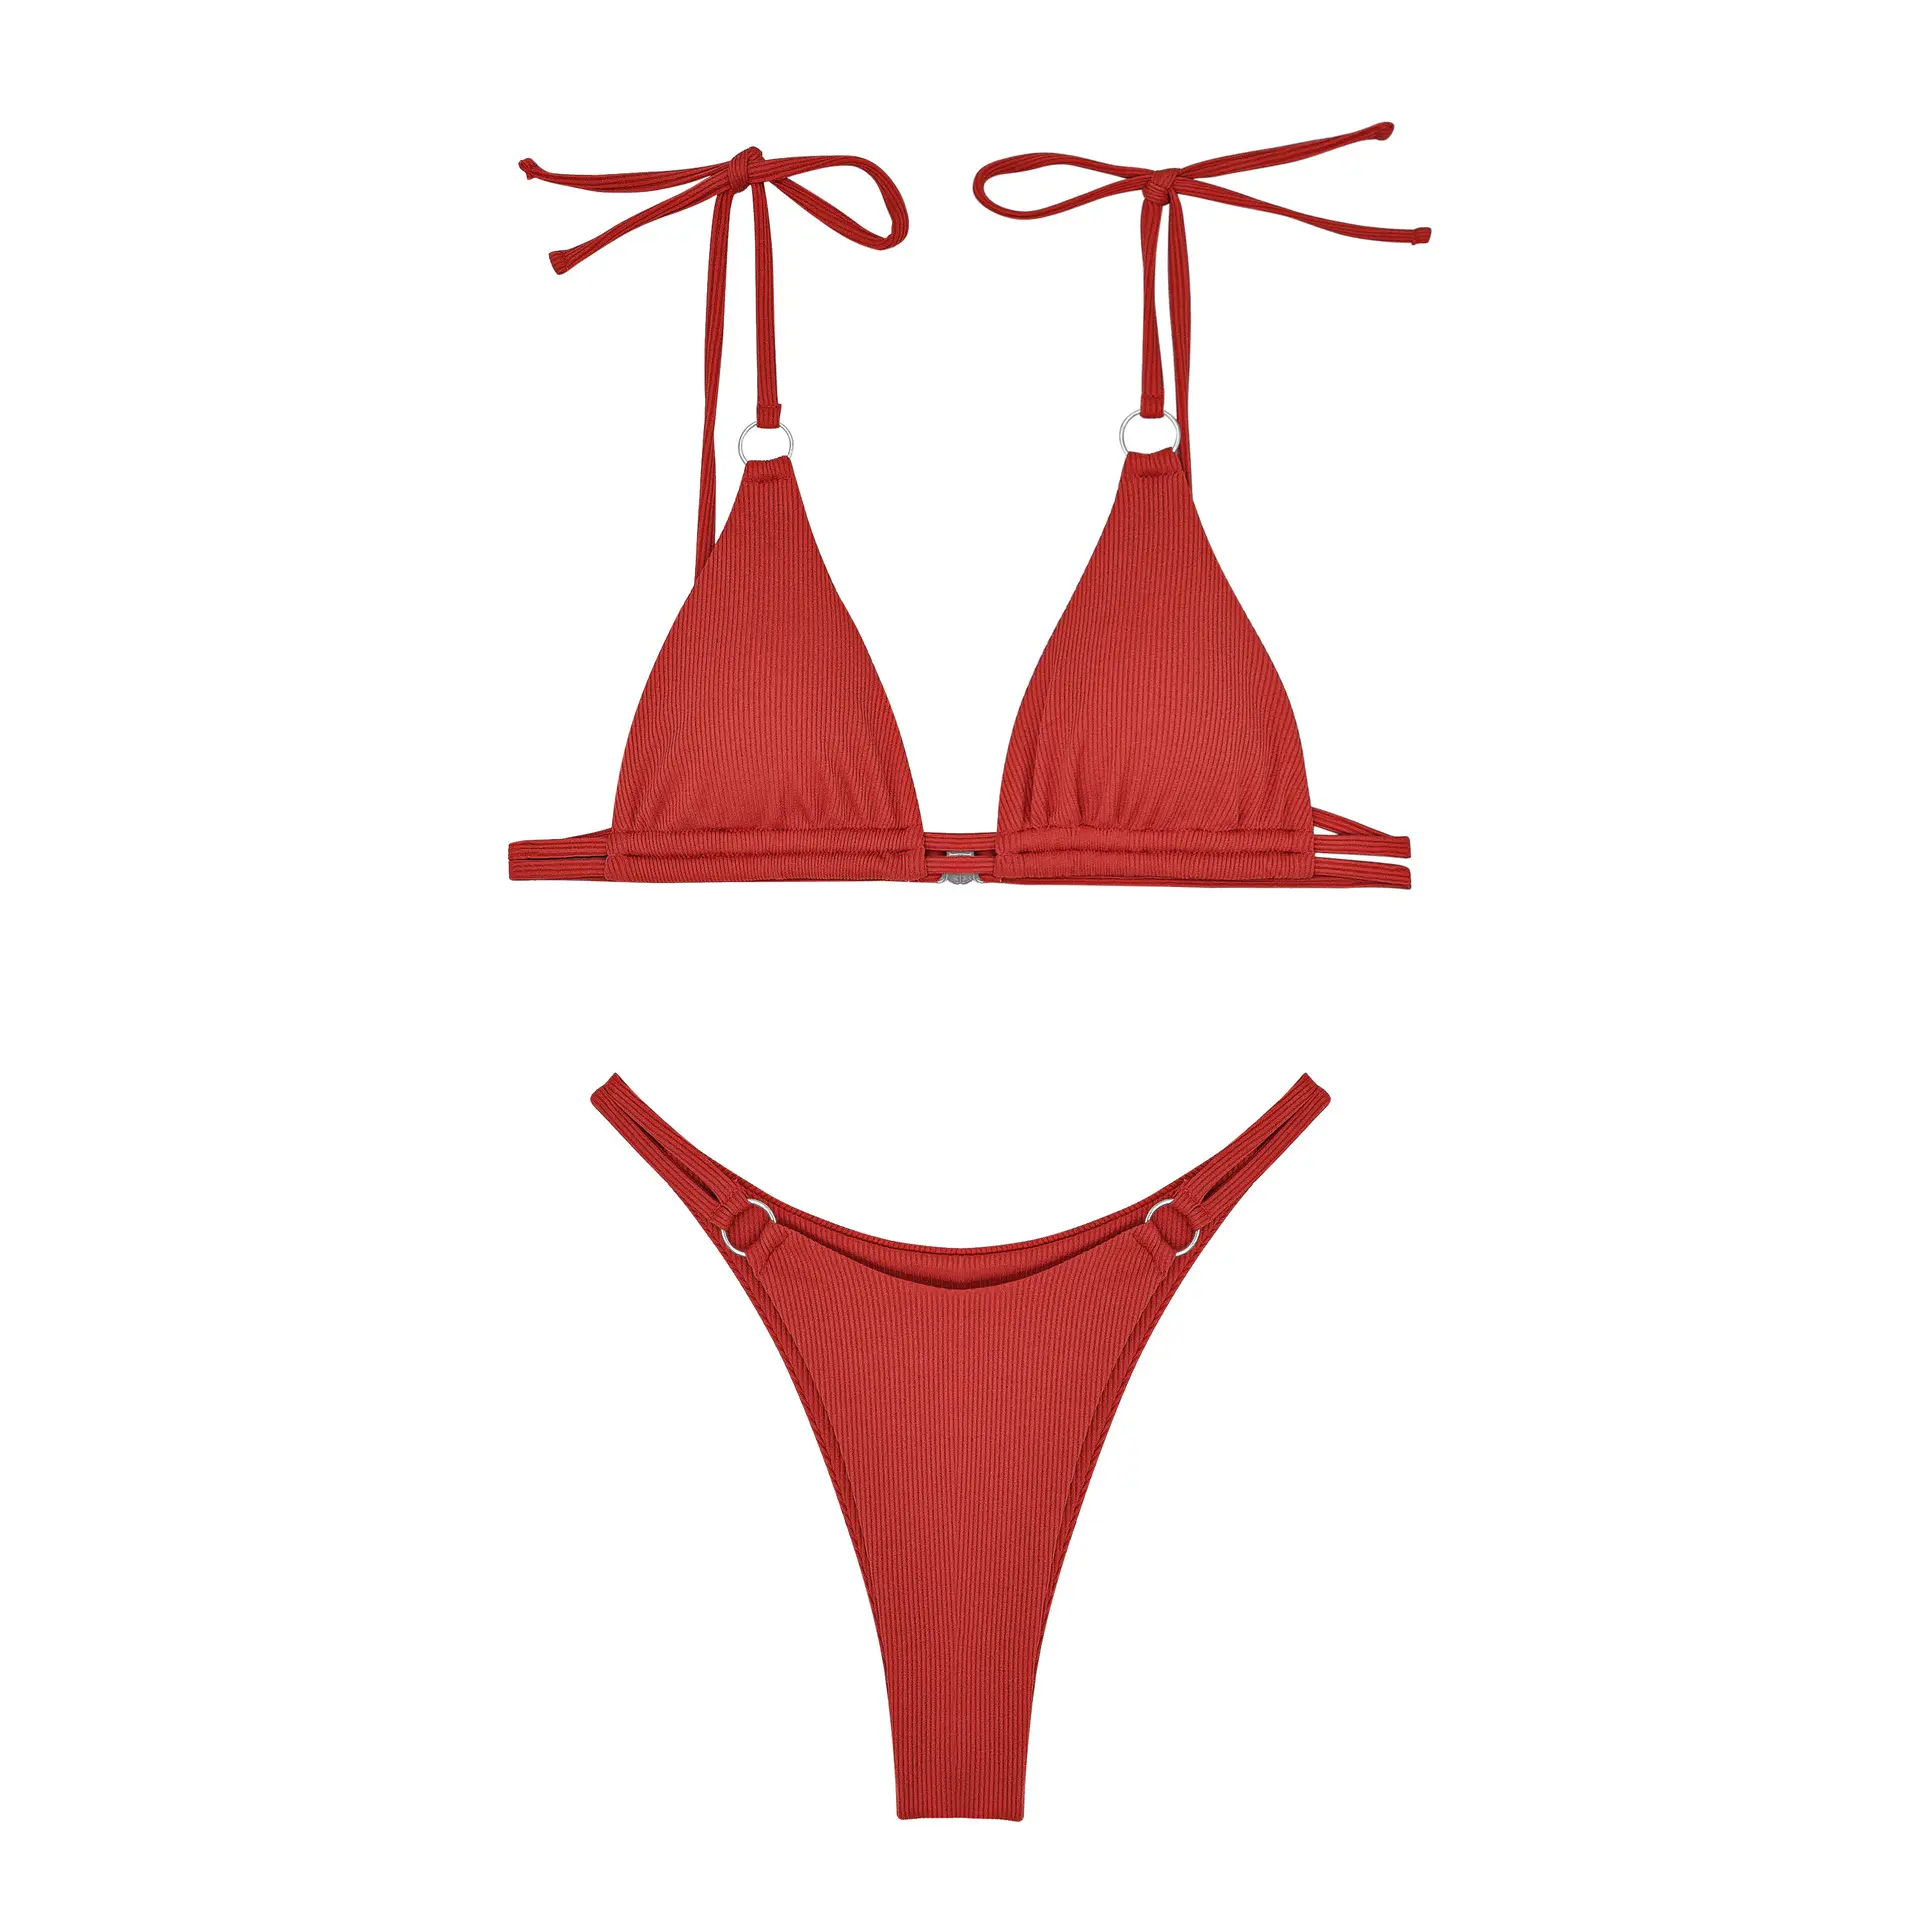 Double-face sexy piccola striscia di fossa corpo triangolare bikini commercio estero costume da bagno transfrontaliero 4051